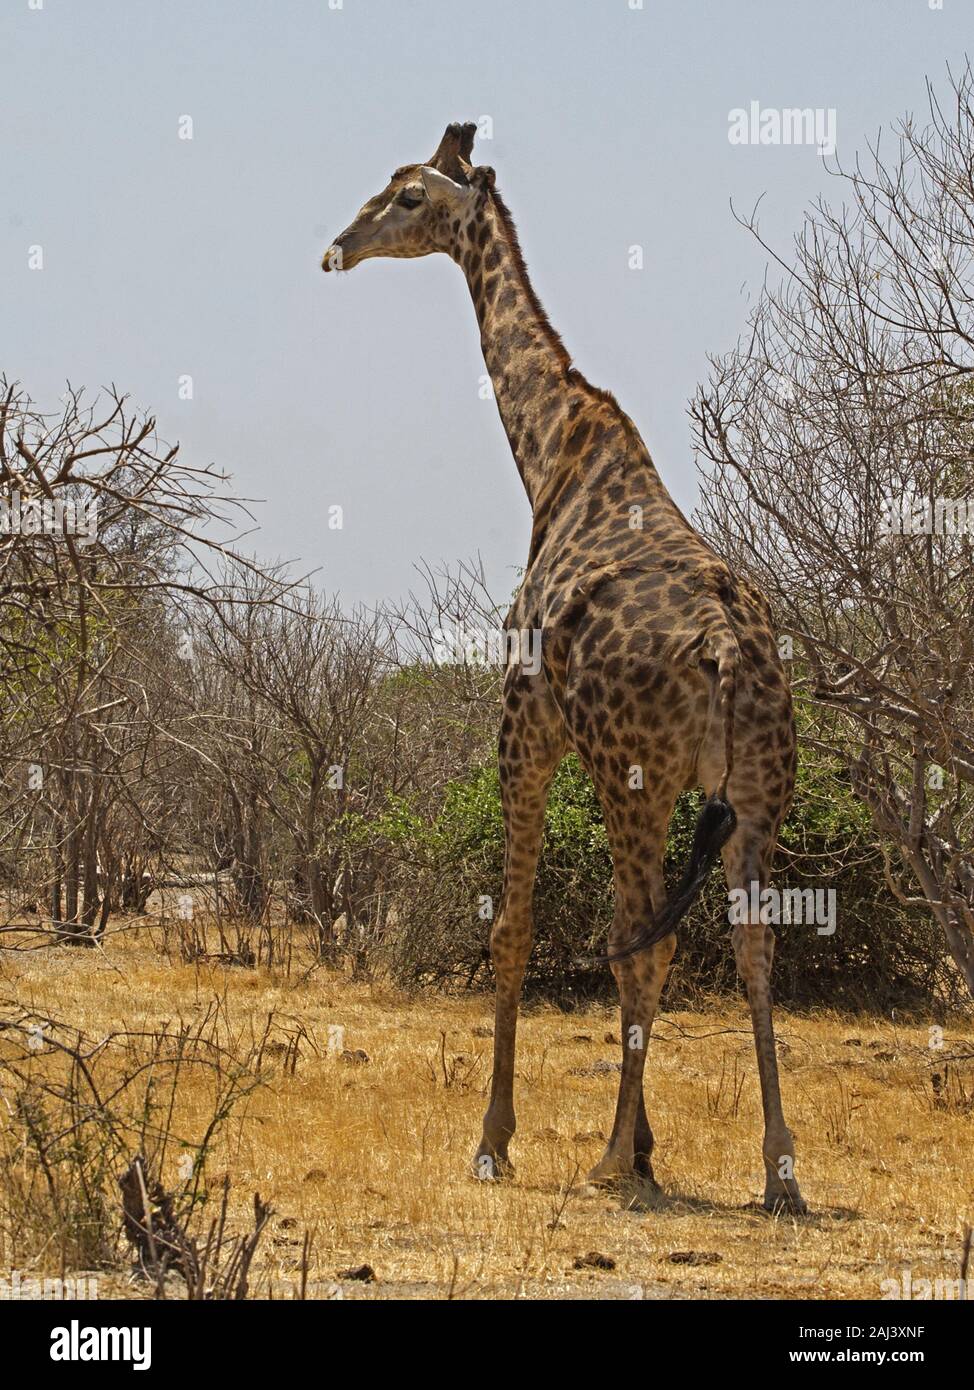 Namibian giraffe standing Stock Photo